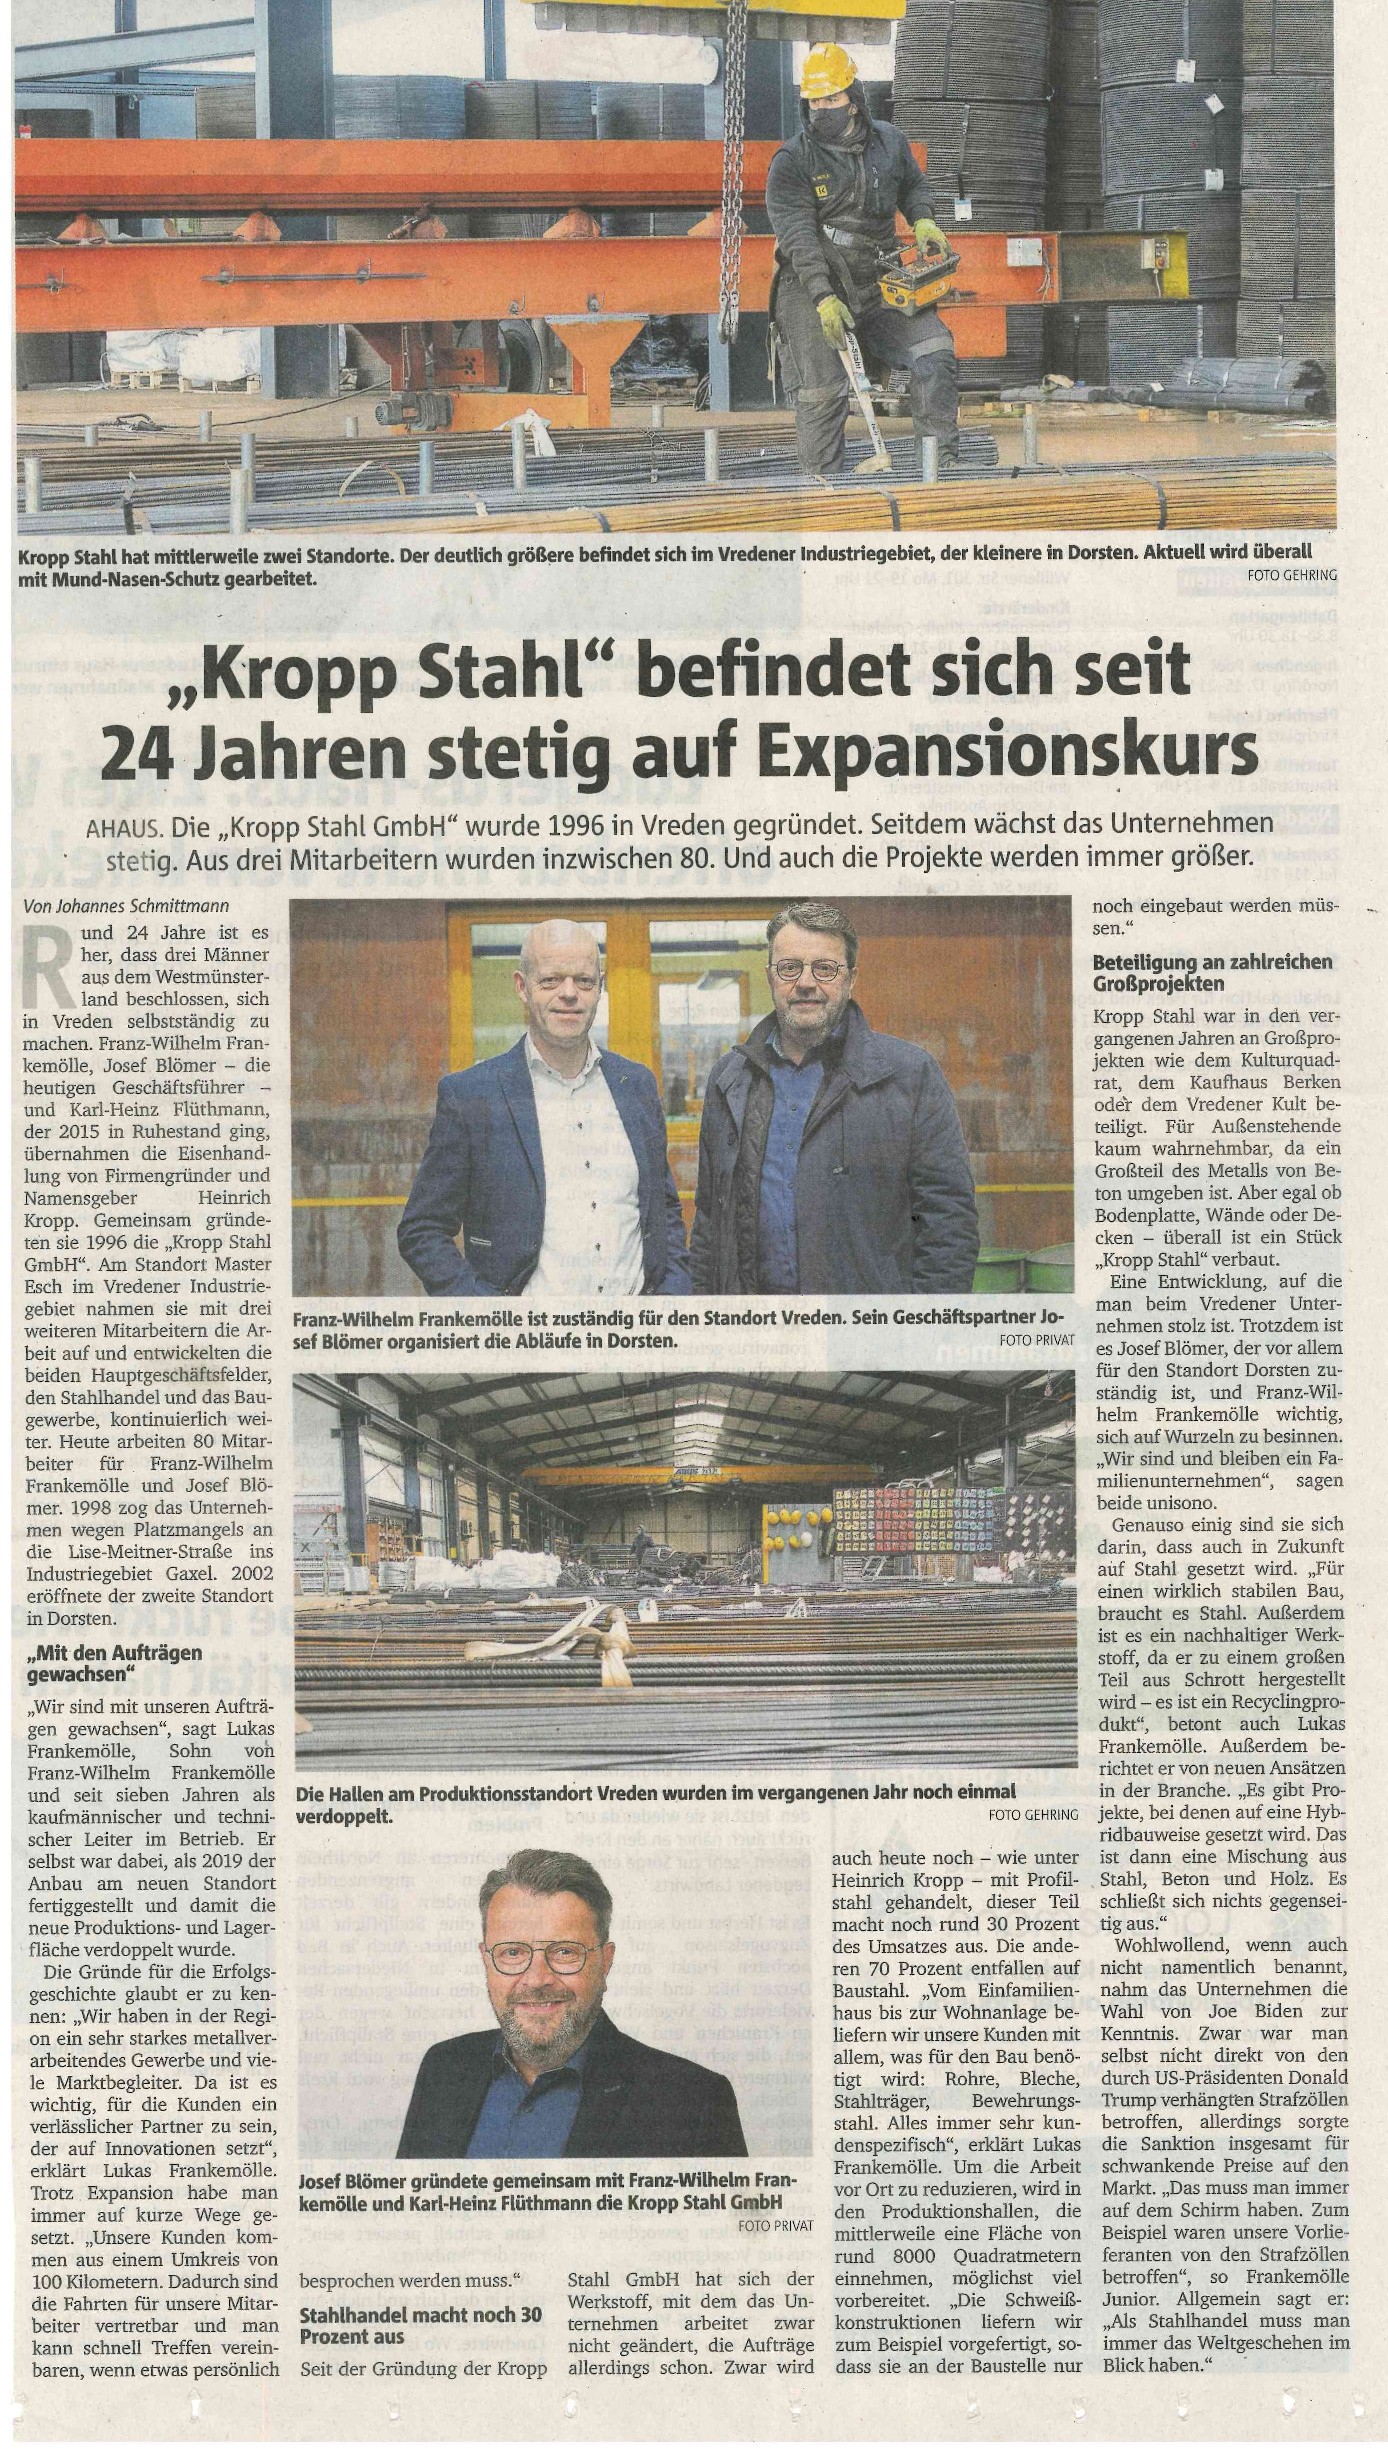 30.11.2020 Bericht in der Münsterlandzeitung